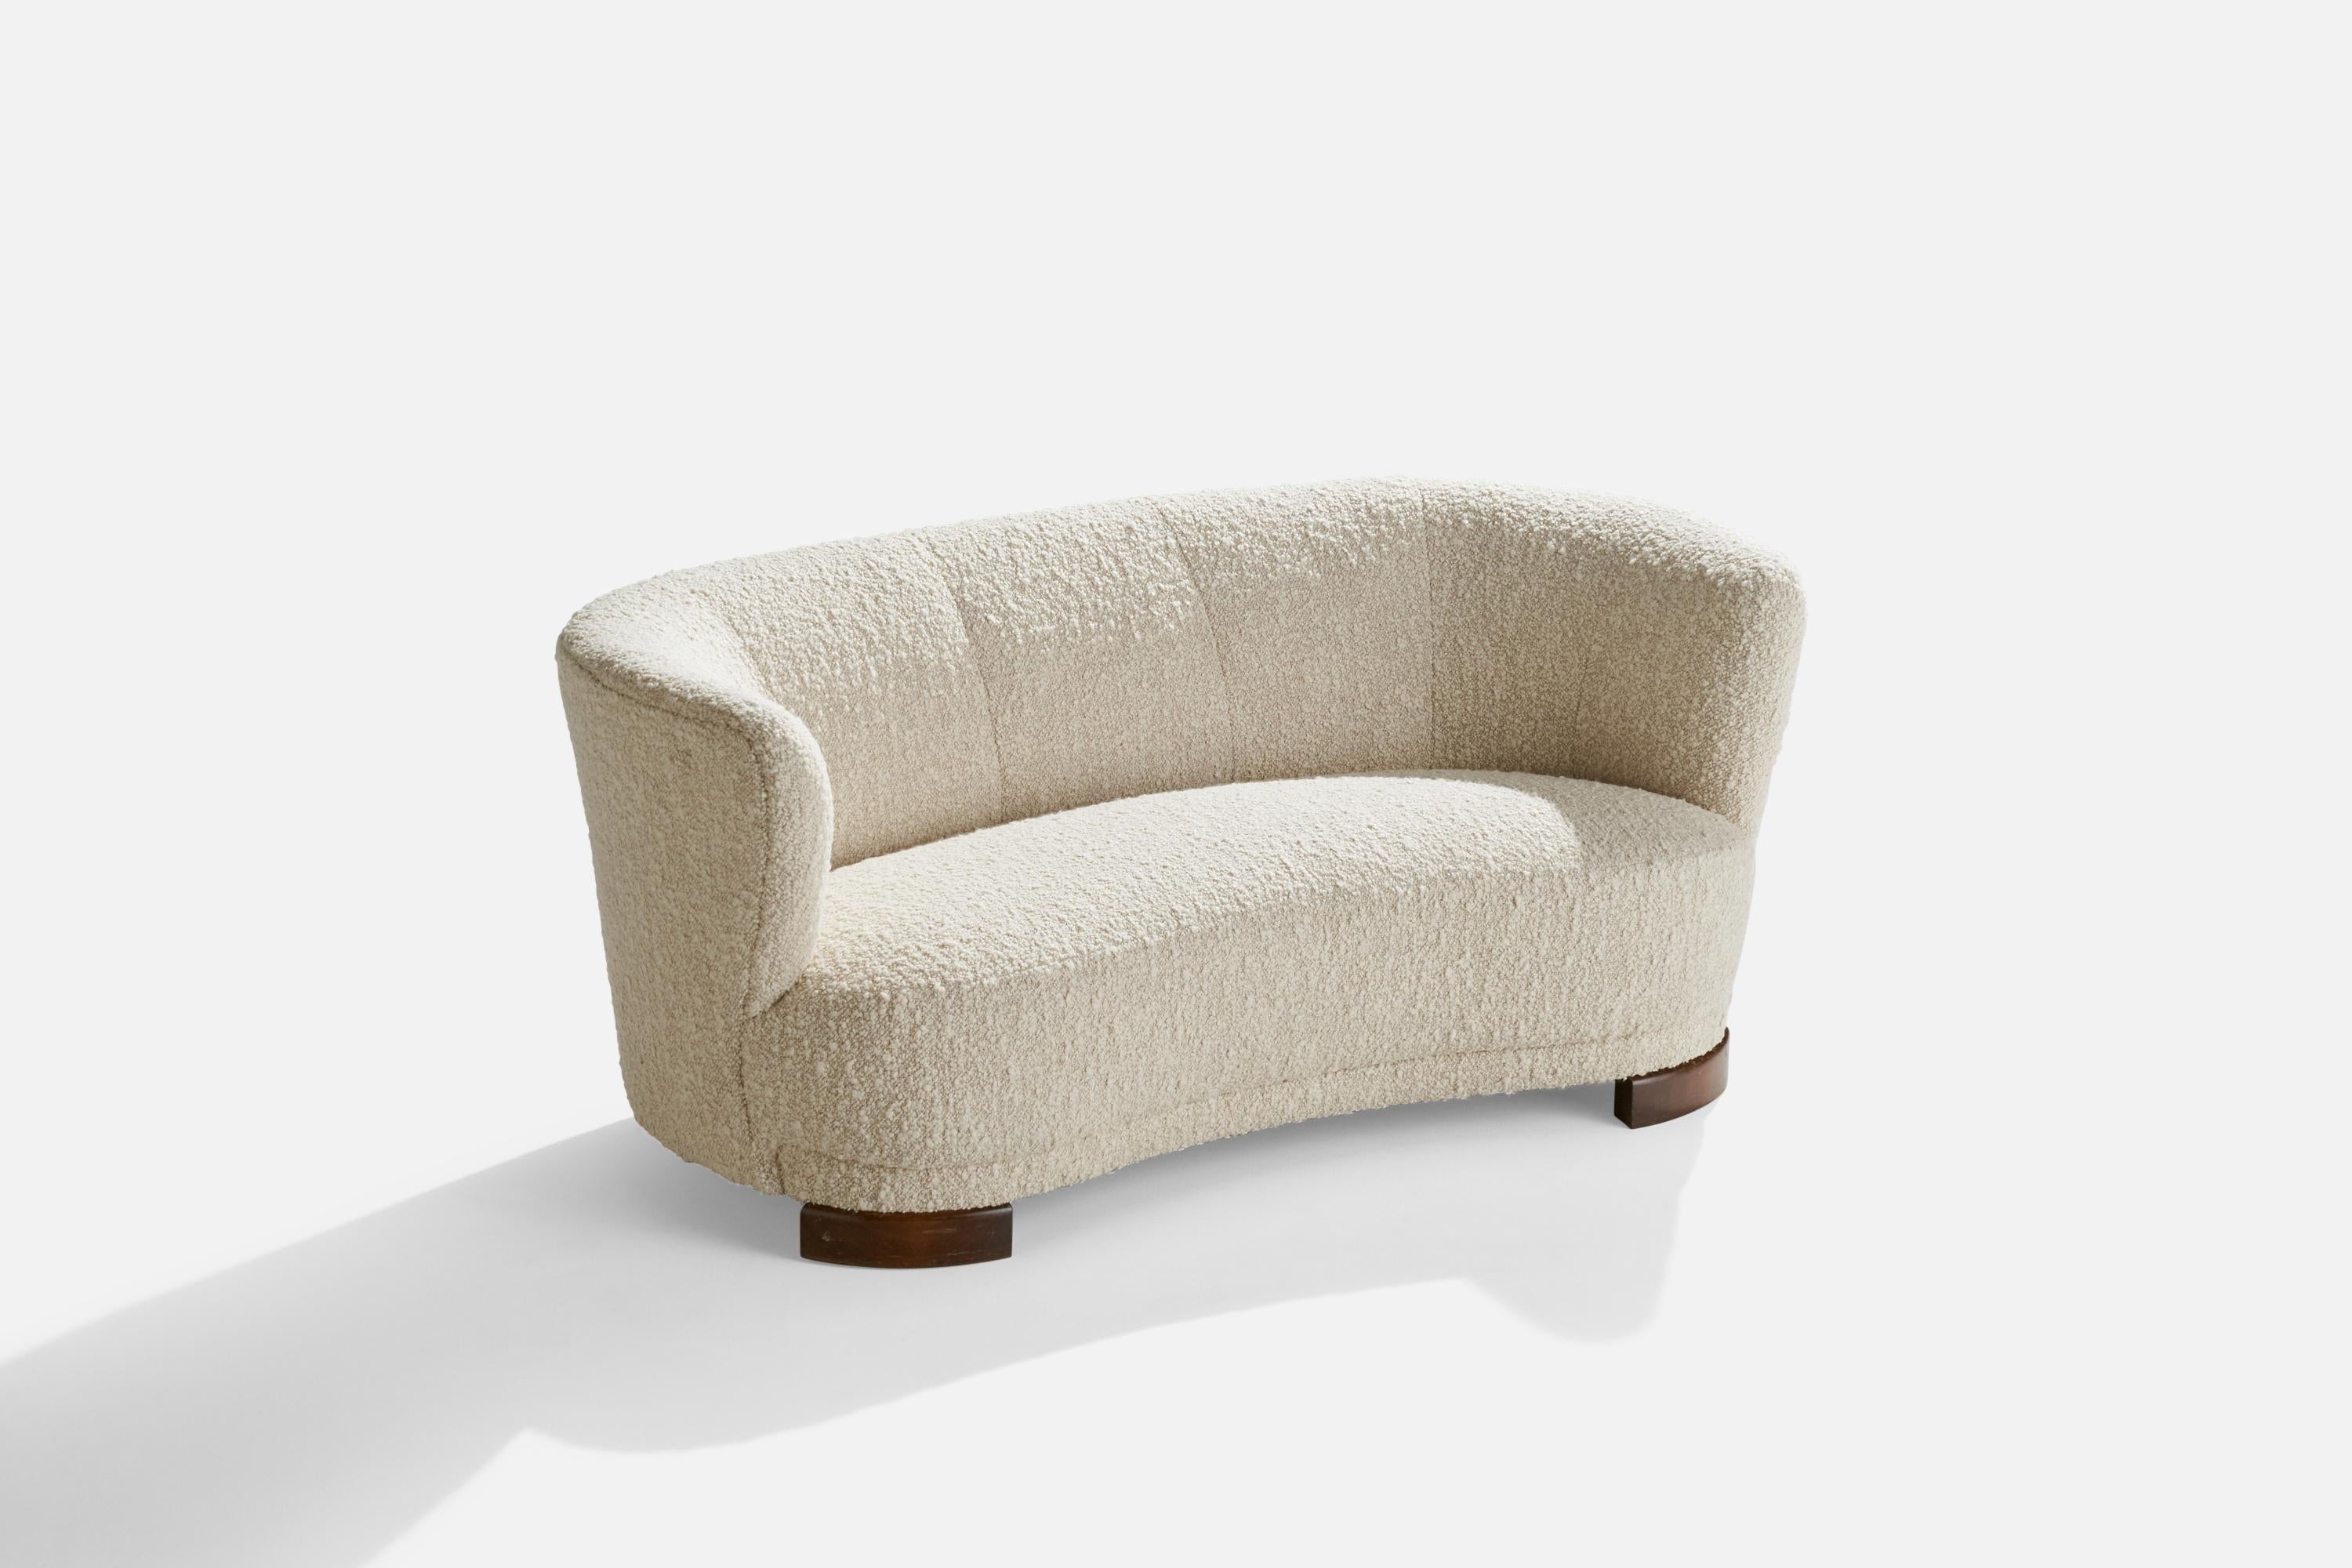 Canapé en tissu bouclé blanc cassé et en bois taché foncé, conçu et produit au Danemark dans les années 1940.

Hauteur de l'assise : 14